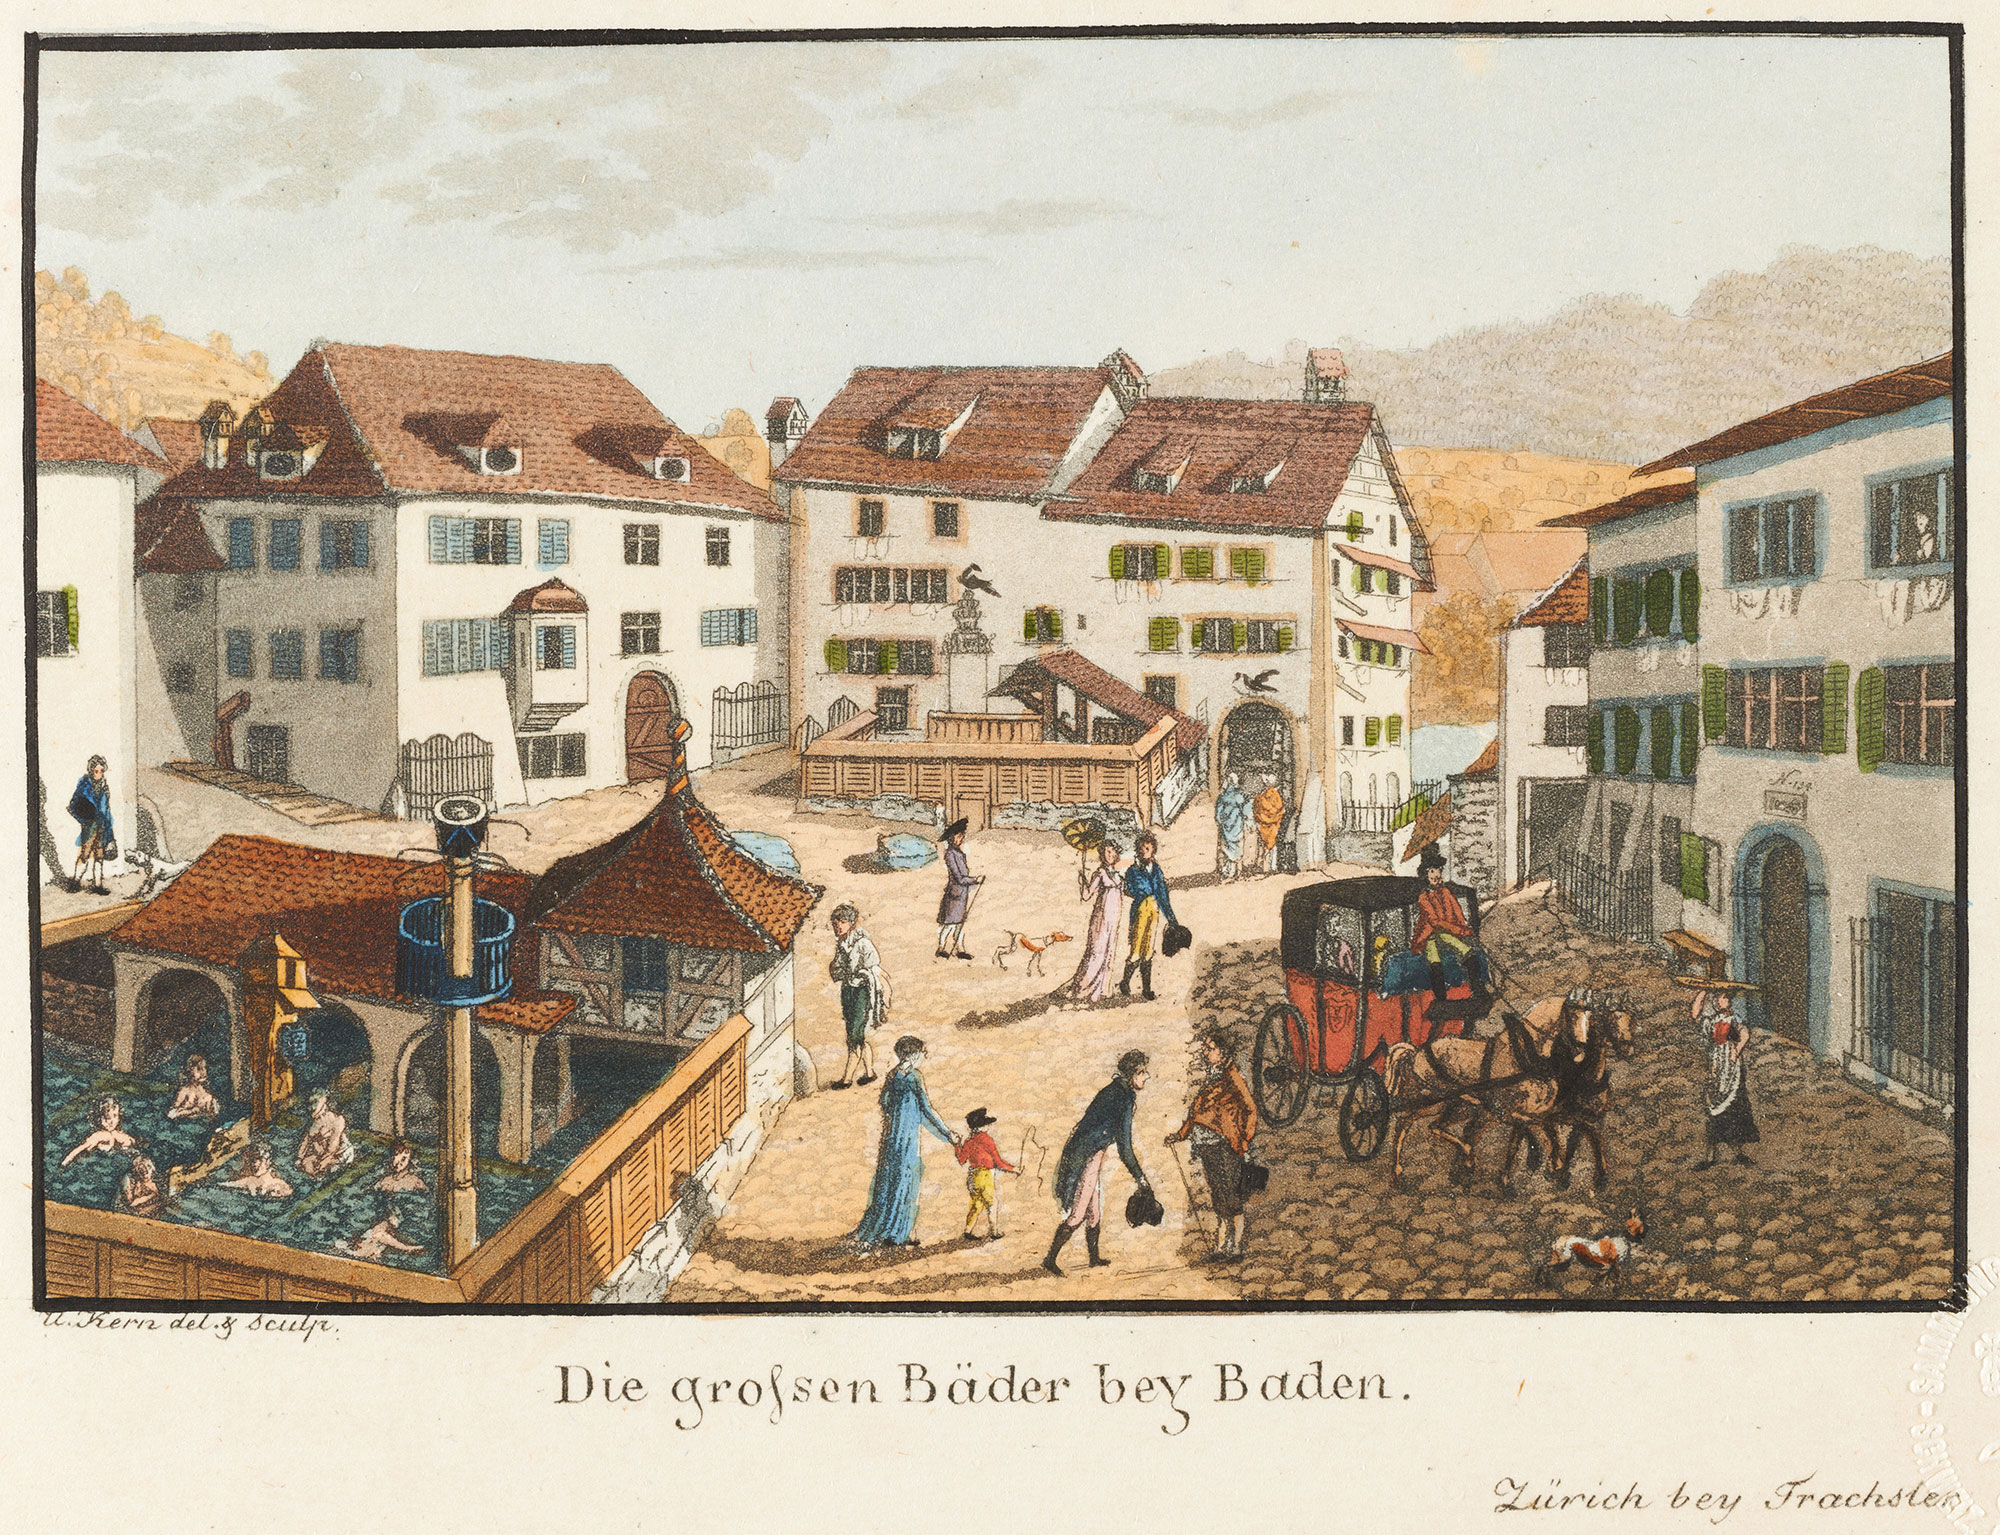 Baden – Die groessen Bäder